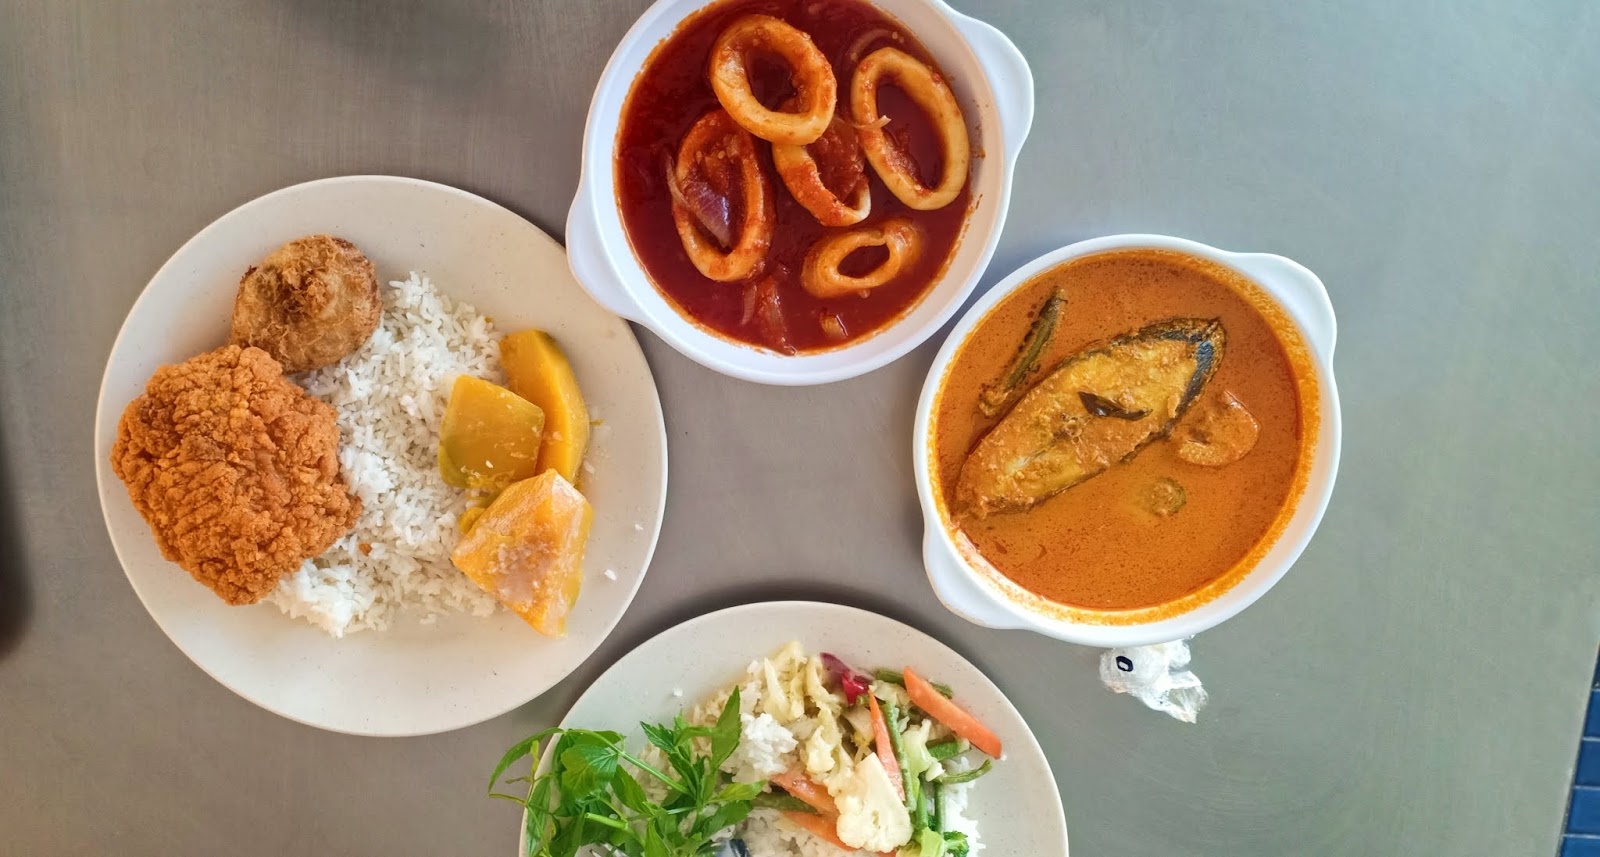 Tempat Makan Menarik di Seremban | Menarik Juga Lunch di Medan Selera PSMA Ampangan Seremban Negeri Sembilan